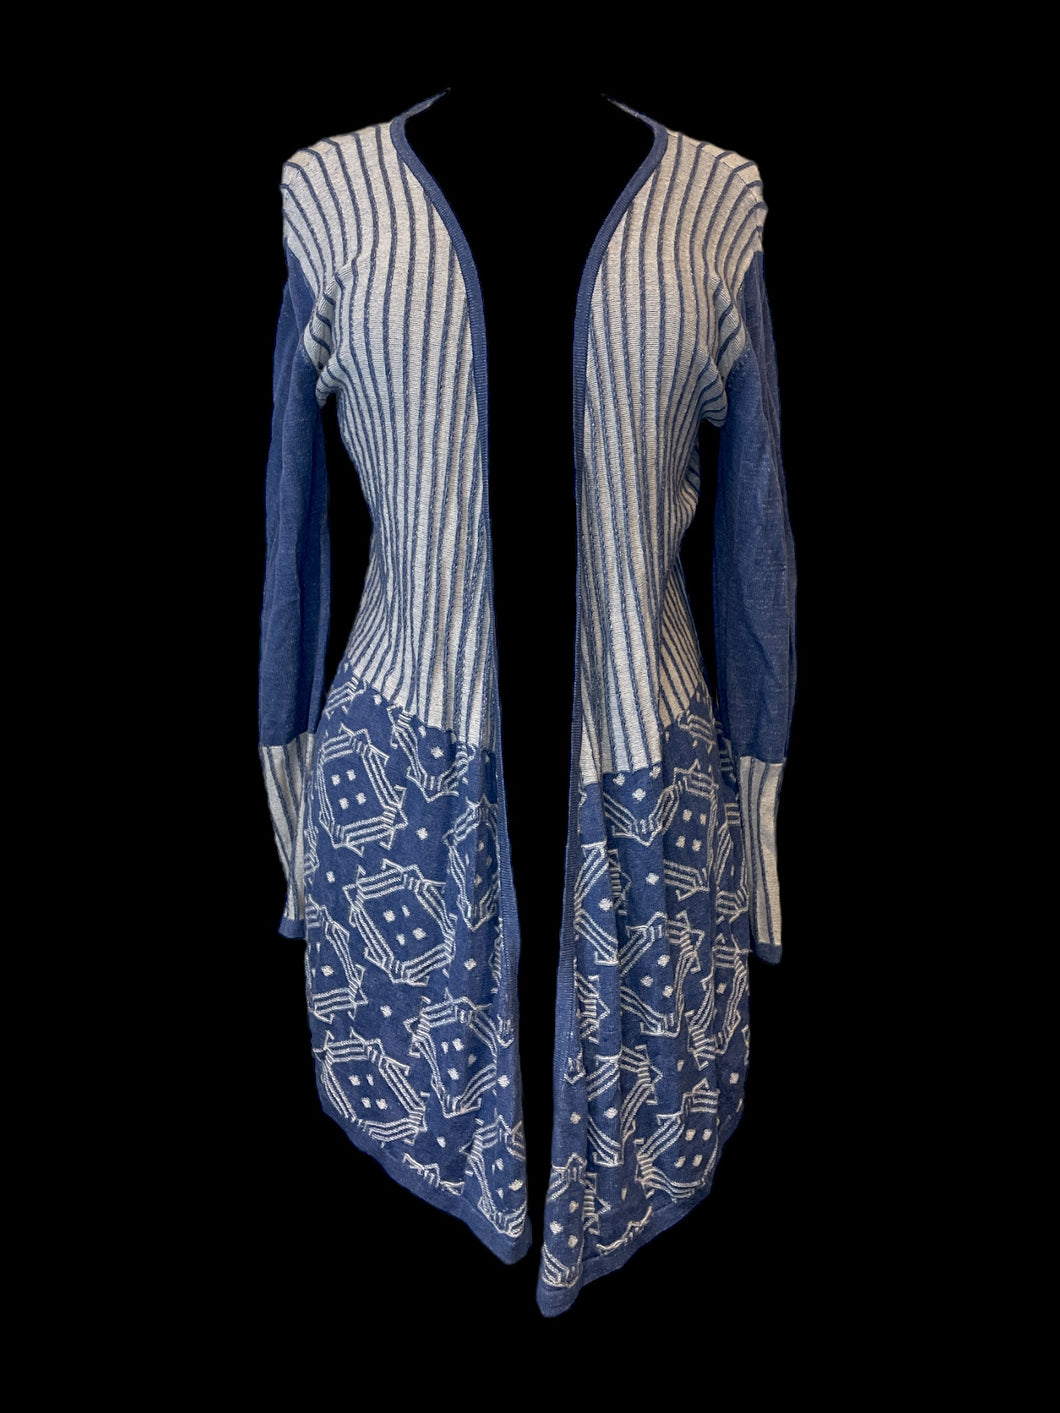 0X Grey & blue grey stripe & geometric pattern knit open front waterfall cardigan